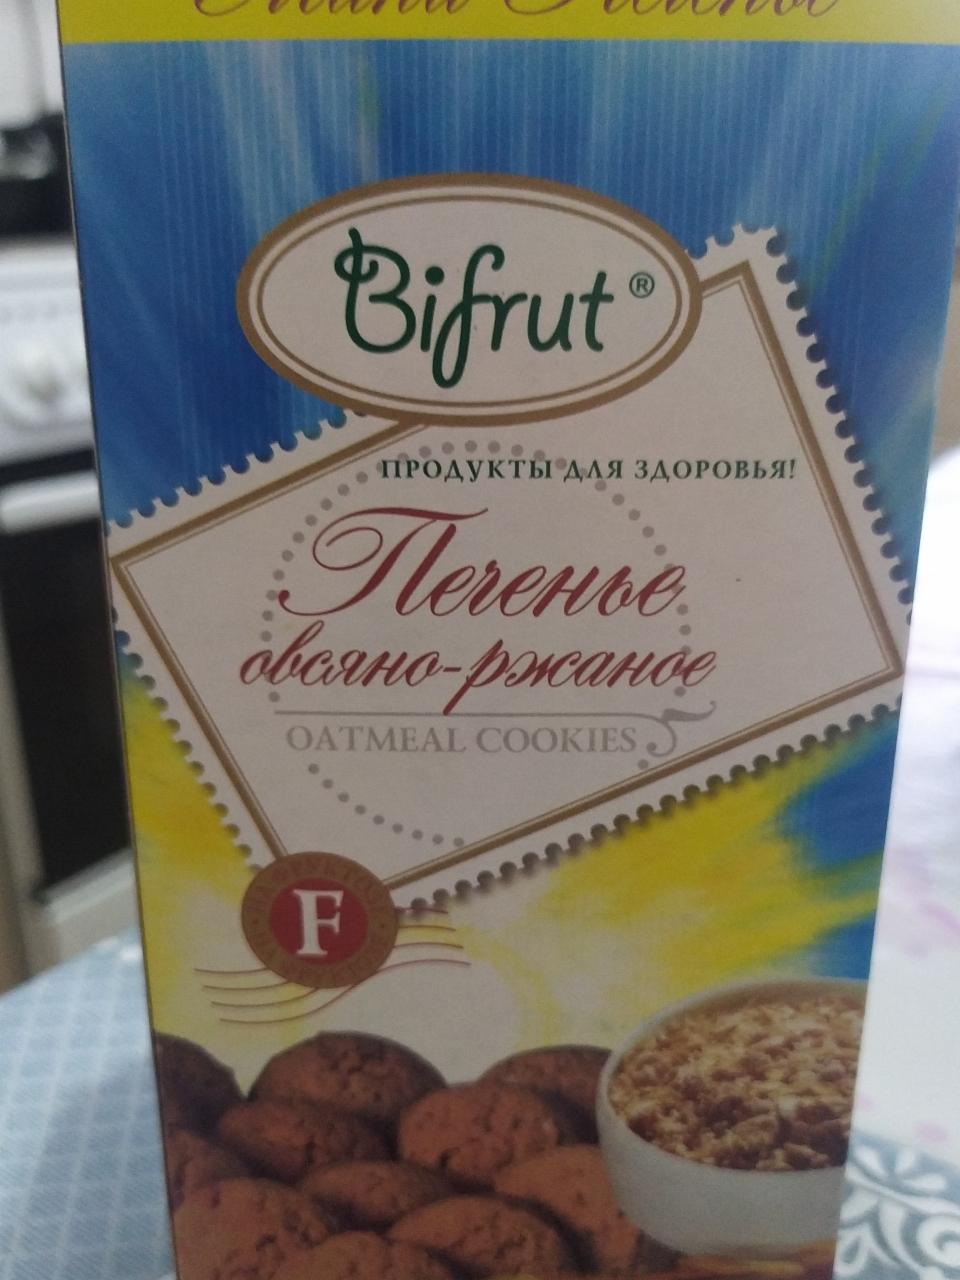 Фото - Печенье овсяно-ржаное Bifrut